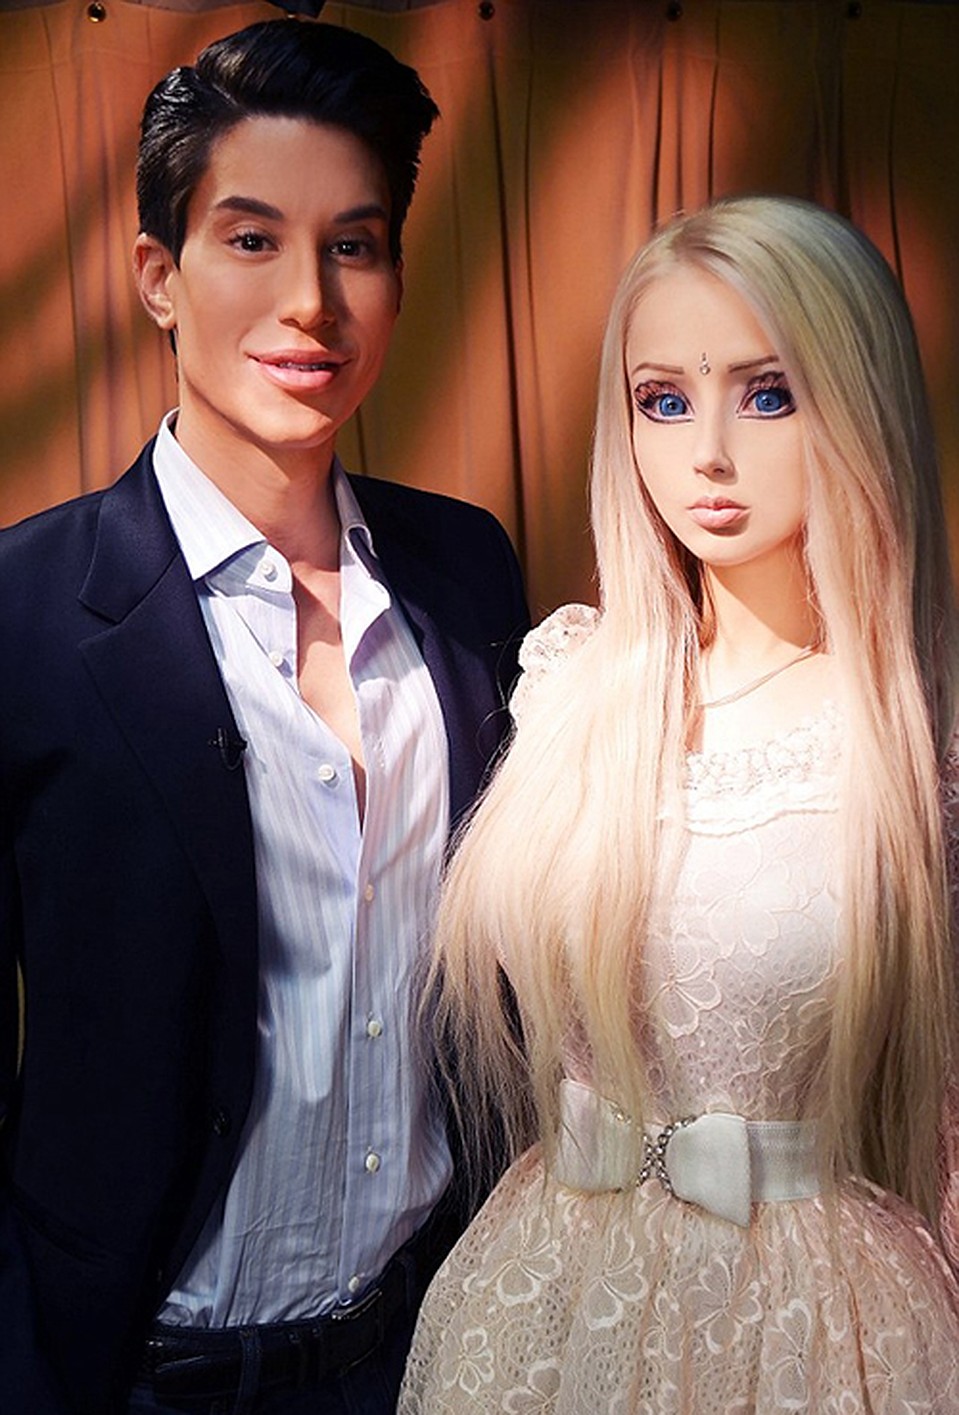 Барби и Кен встретились... и не понравились друг другу. Валерия Лукьянова разочаровала Джастина. Фото: SPLASH NEWS